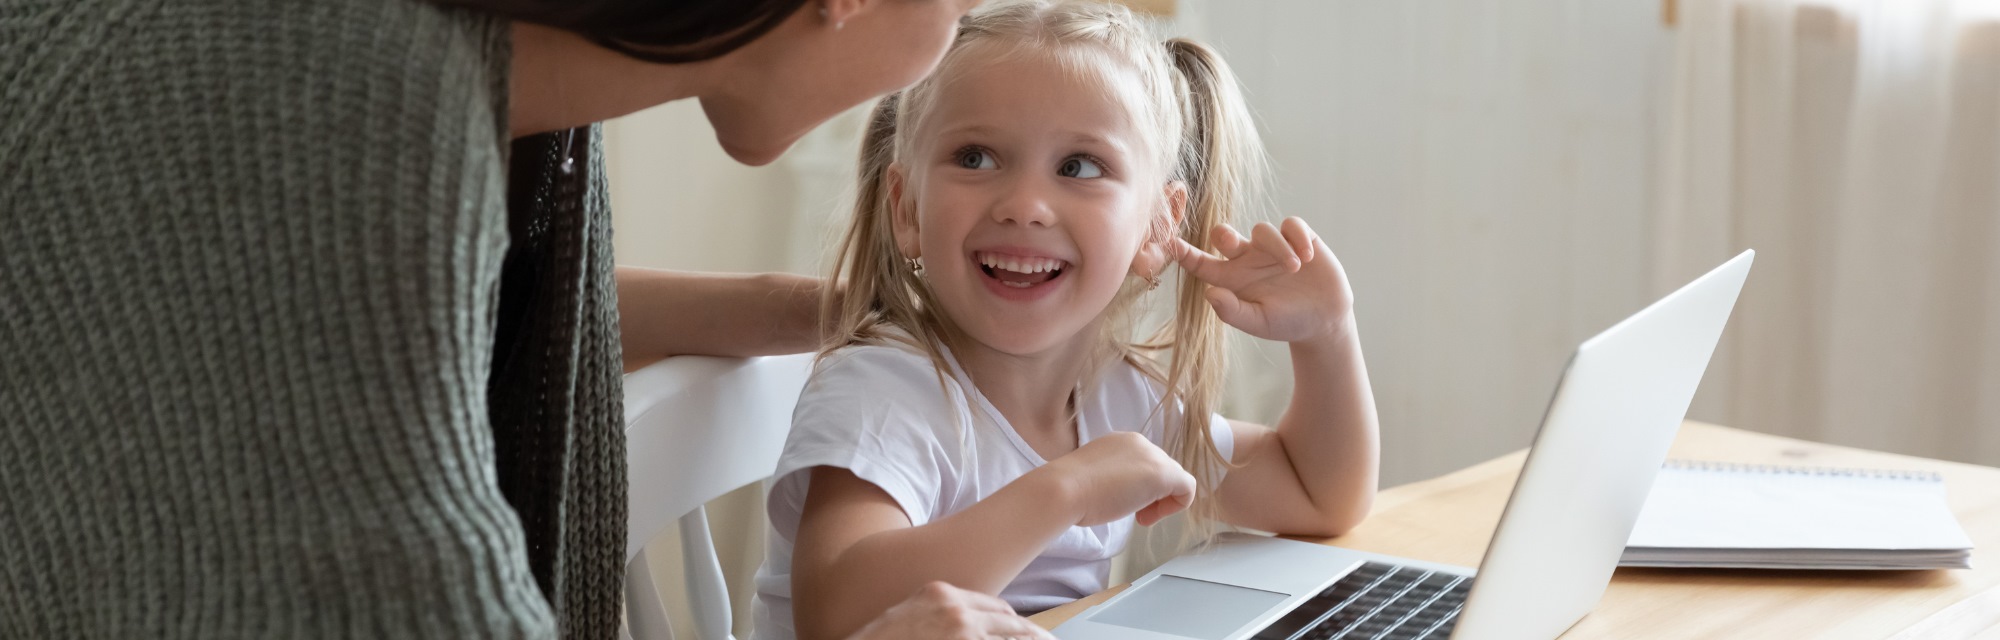 Imagen de portada de curso "Pensamiento computacional en el Nivel Inicial" - Se visualiza una Nena sonriendo y mirando a una Mujer indicando algo en la pantalla de una notebook